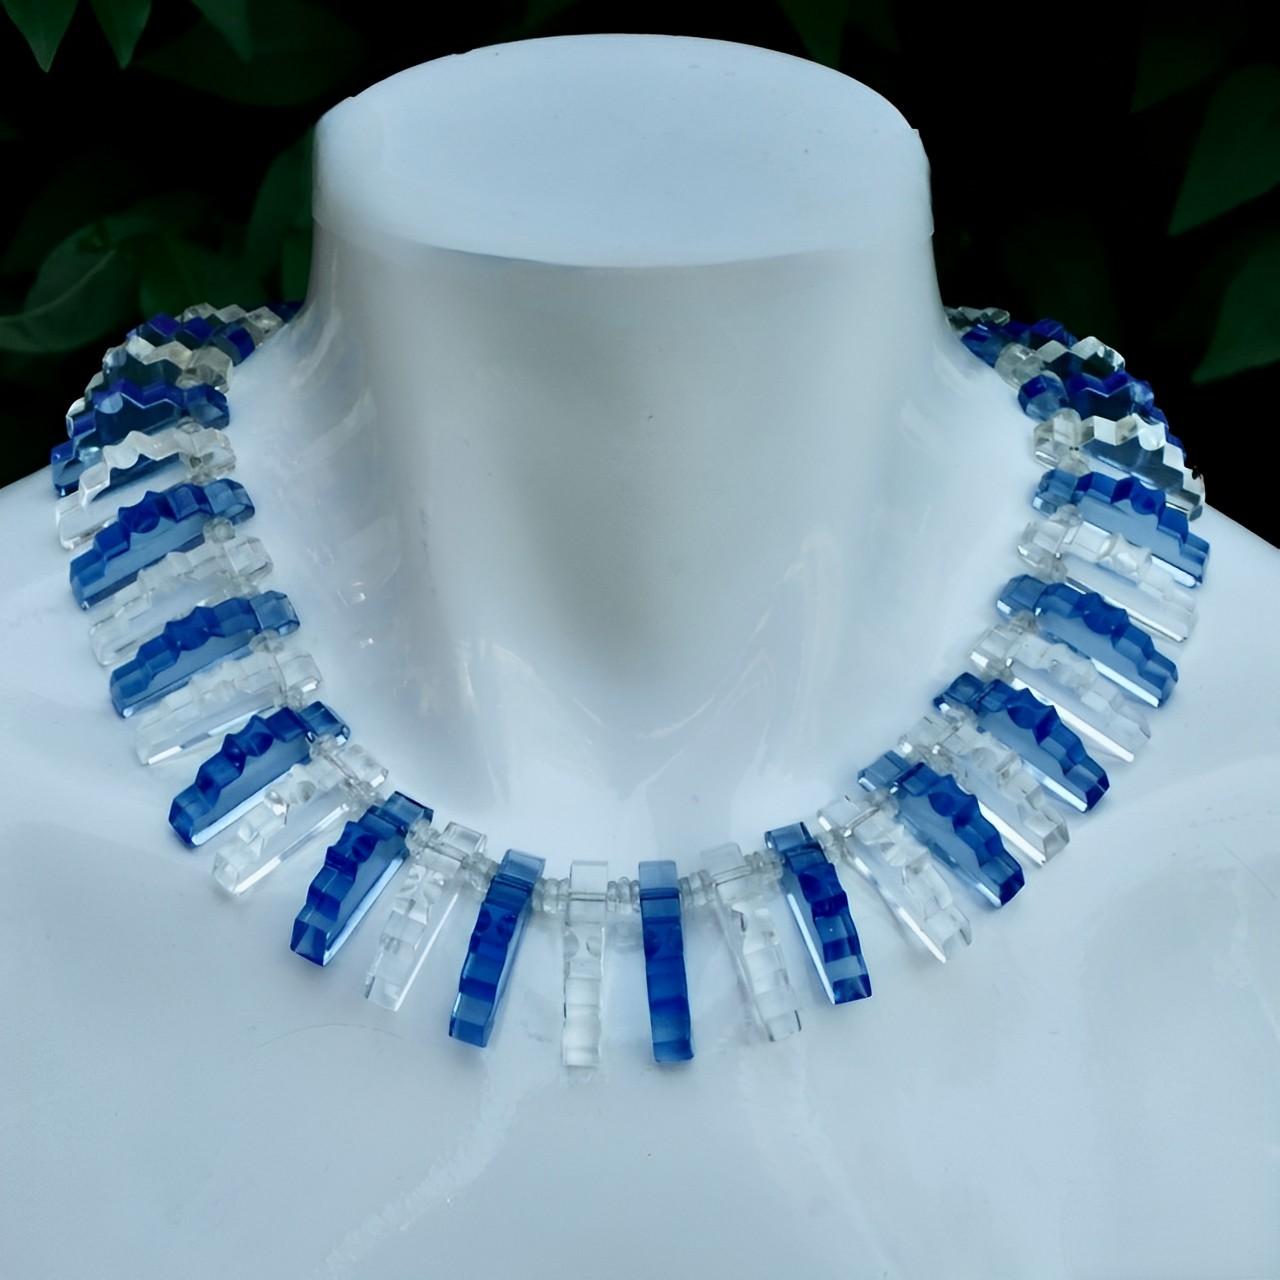 Fabulous Art Deco Fransen Halskette Kragen mit klassischen Deco-Design Mitte blau und klar Glasperlen. Sie sind mit drei kleinen, scheibenförmigen, facettierten Zwischenperlen durchsetzt.

Die Perlen sind auf Draht aufgefädelt und mit einer